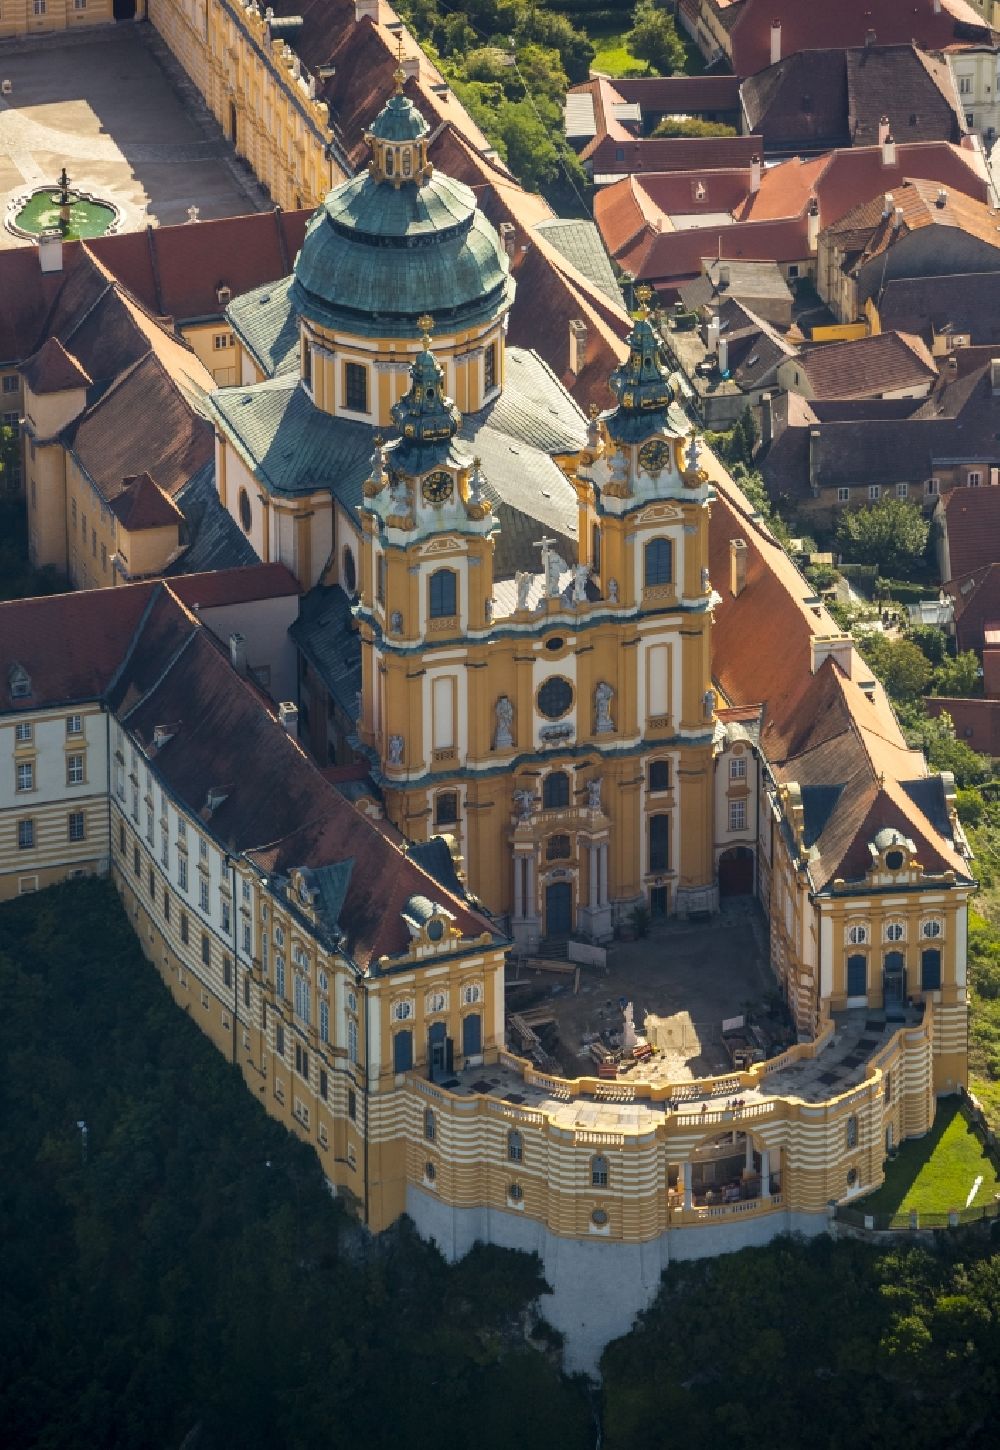 Luftaufnahme Melk - Benediktinerkloster Stift Melk in Niederösterreich bei Melk am Ufer der Donau in Österreich